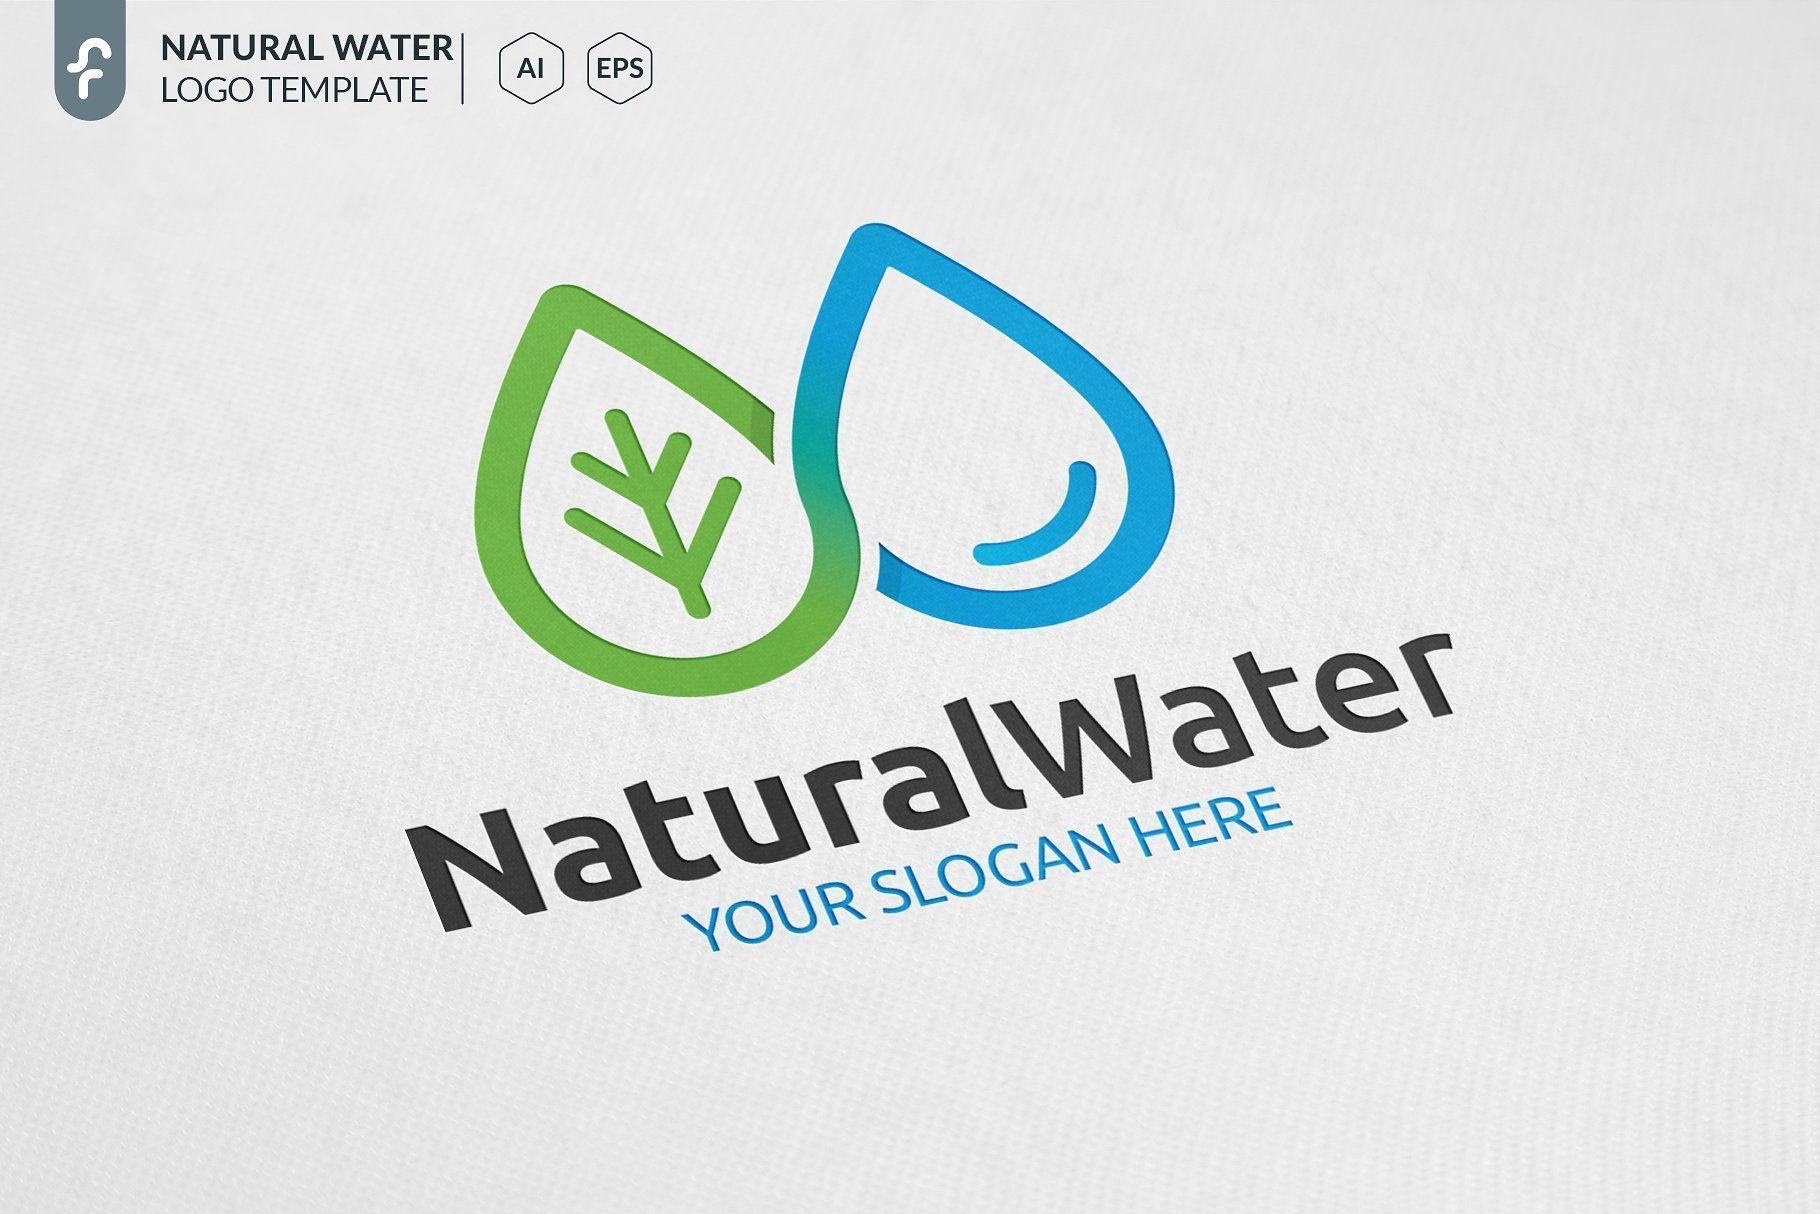 Modern Water Logo - Natural Water Logo Design #logo #design #natural #water #eco #health